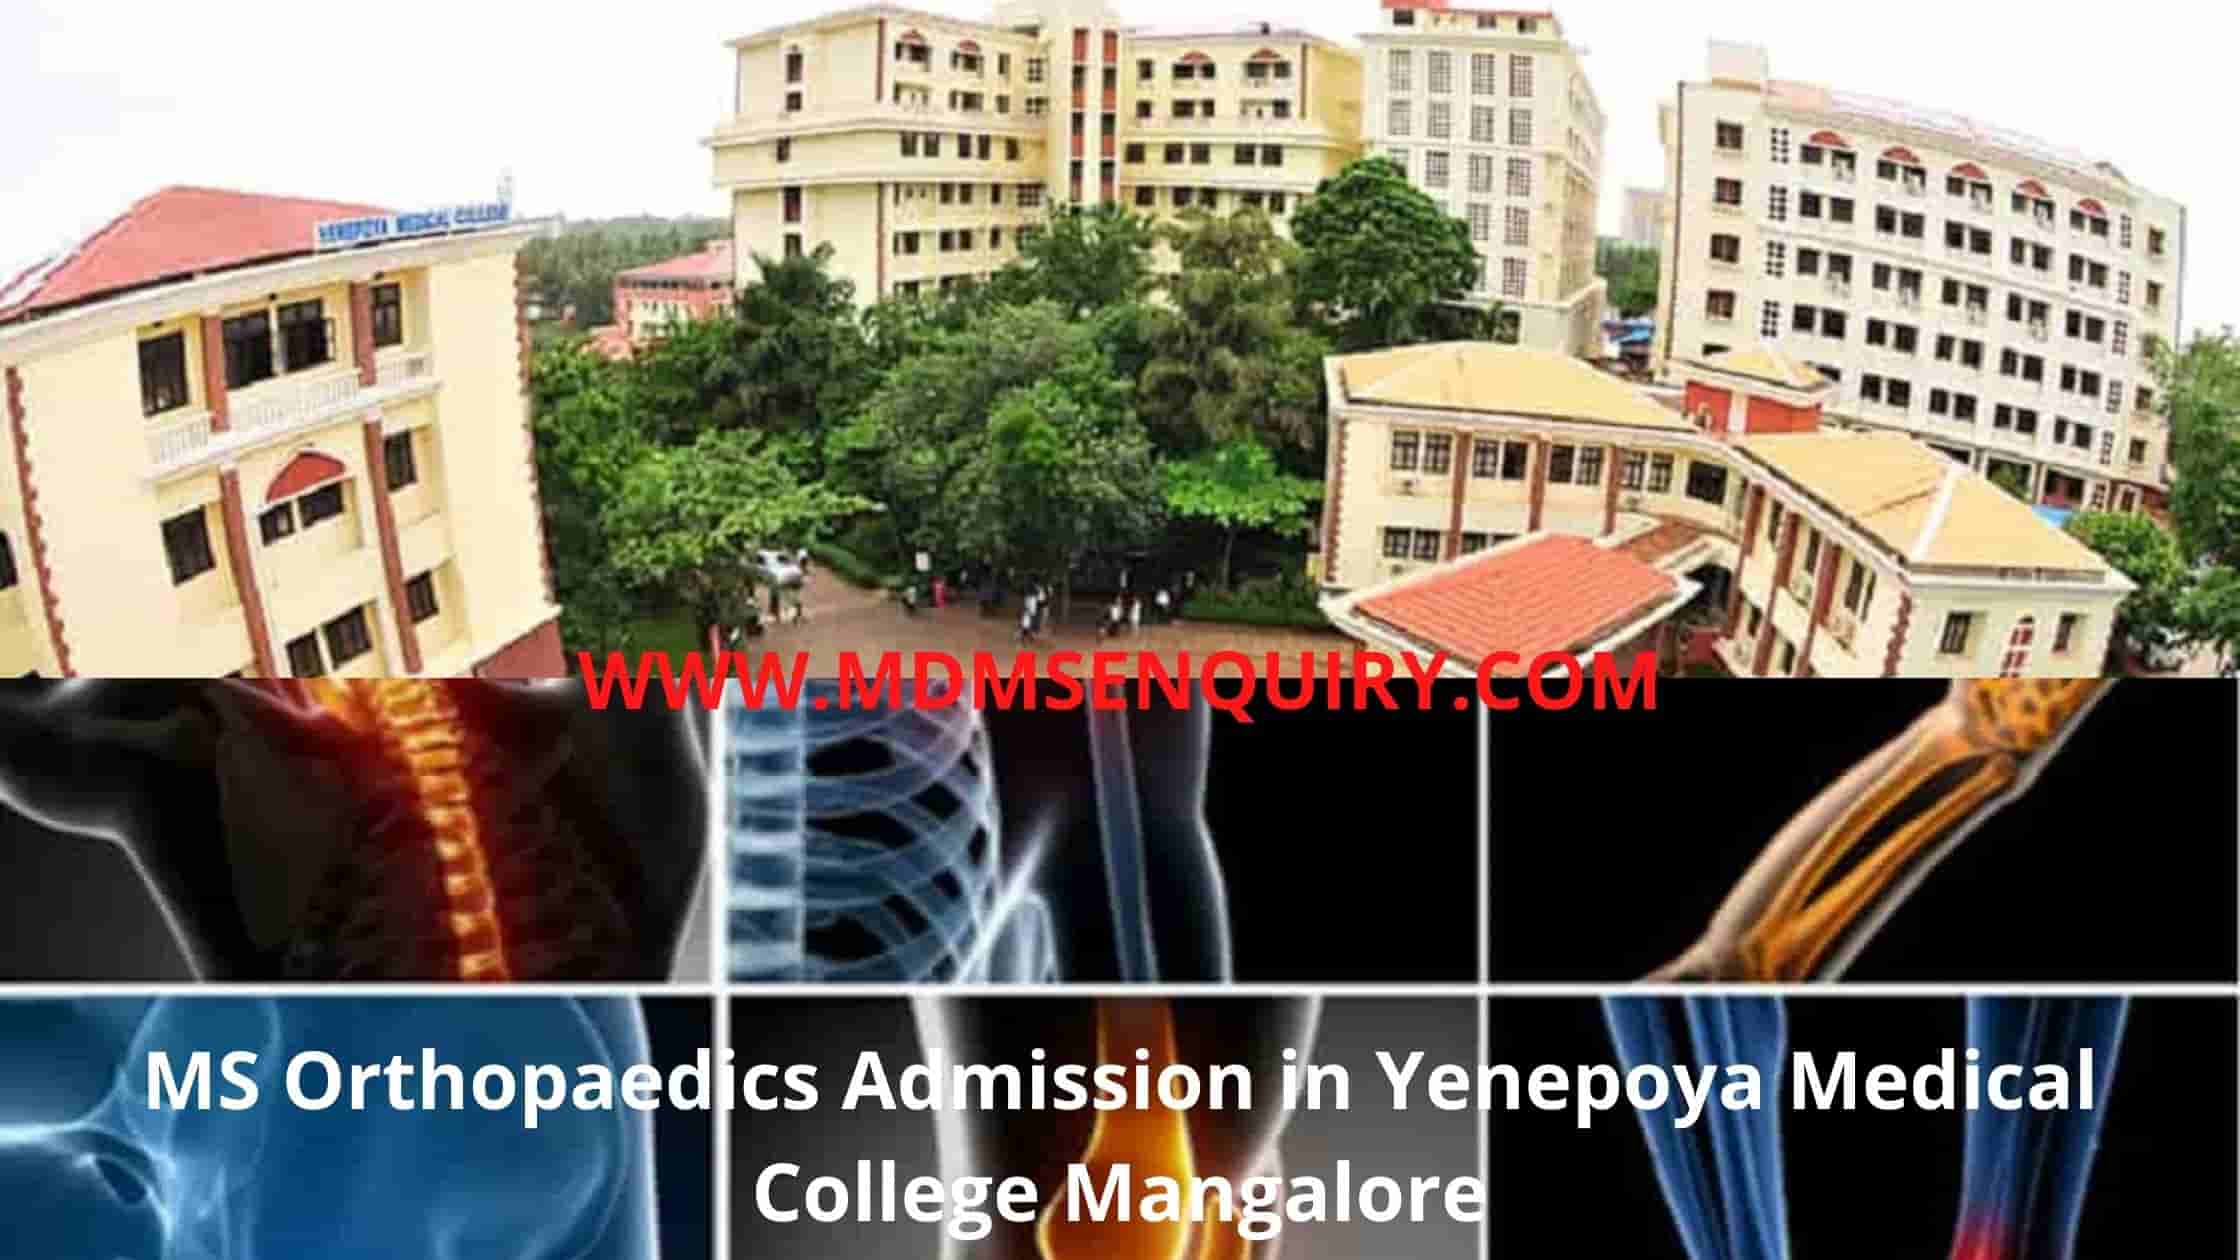 MS Orthopaedics Admission in Yenepoya Medical College Mangalore